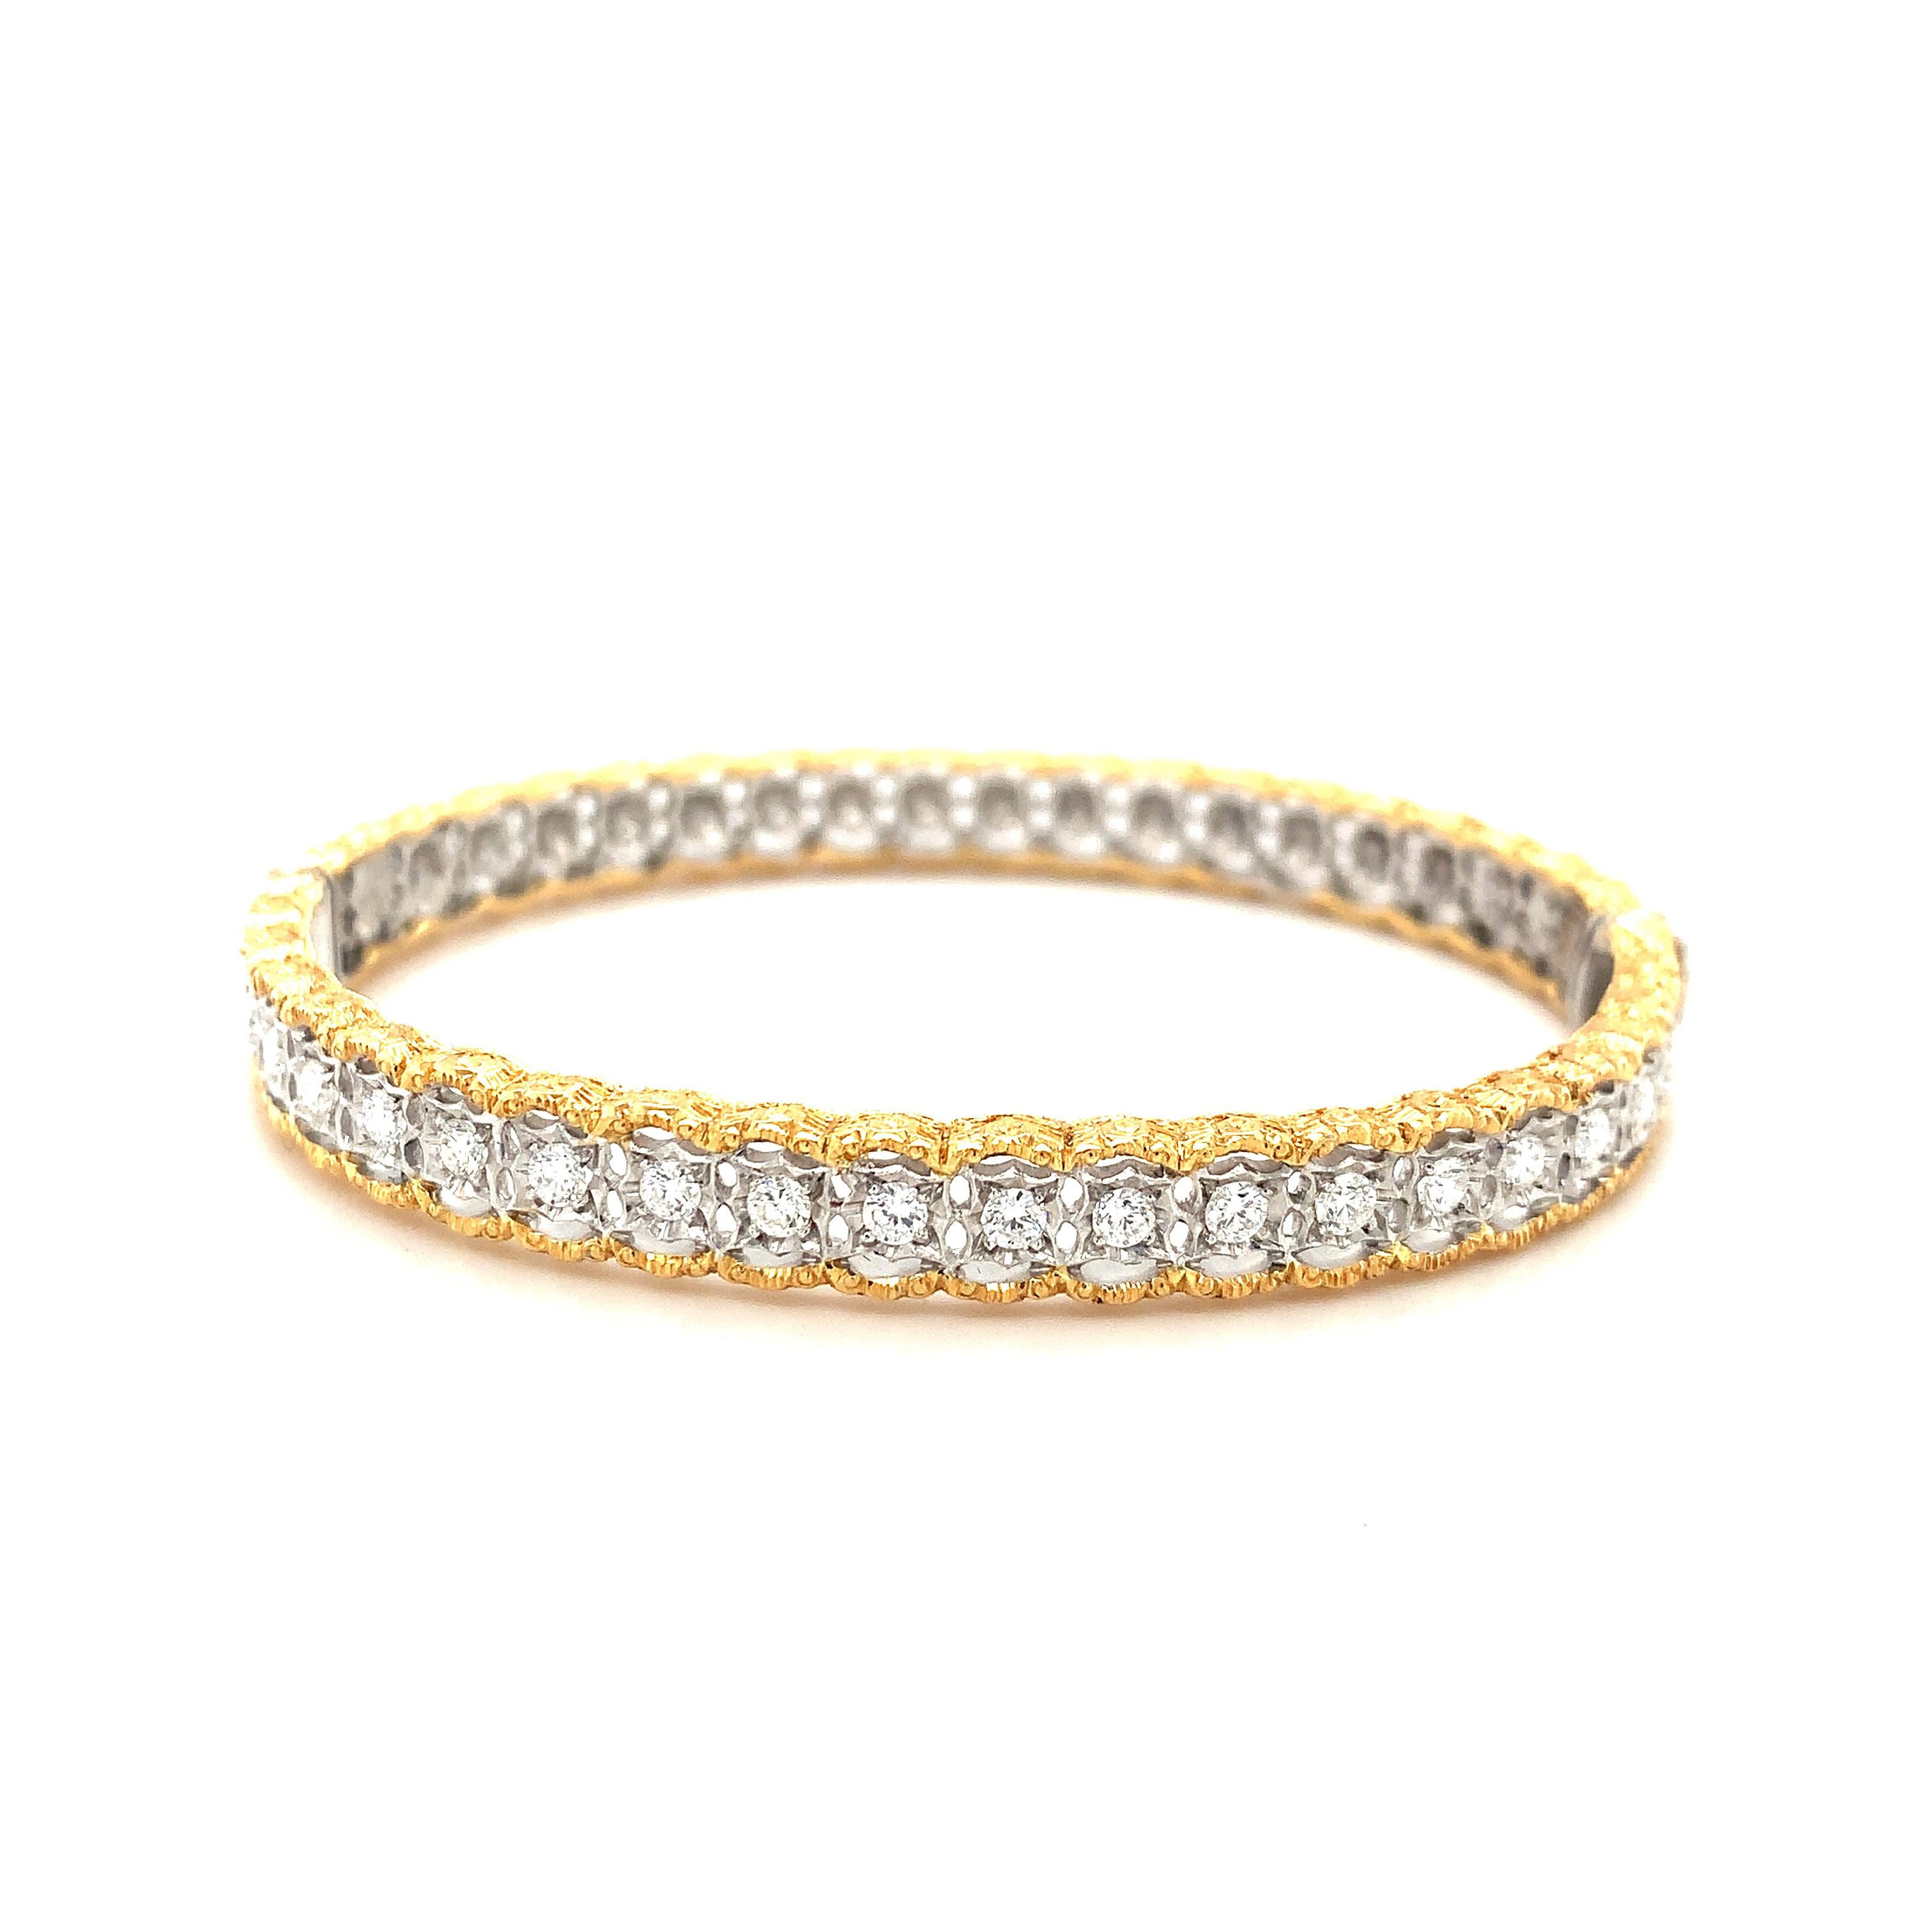 Ce superbe bracelet bangle en or jaune et blanc de style florentin a été fabriqué à la main en Italie et est serti d'un carat de diamants. Le centre du bracelet est en or blanc 18 carats, percé de façon complexe pour former des montures